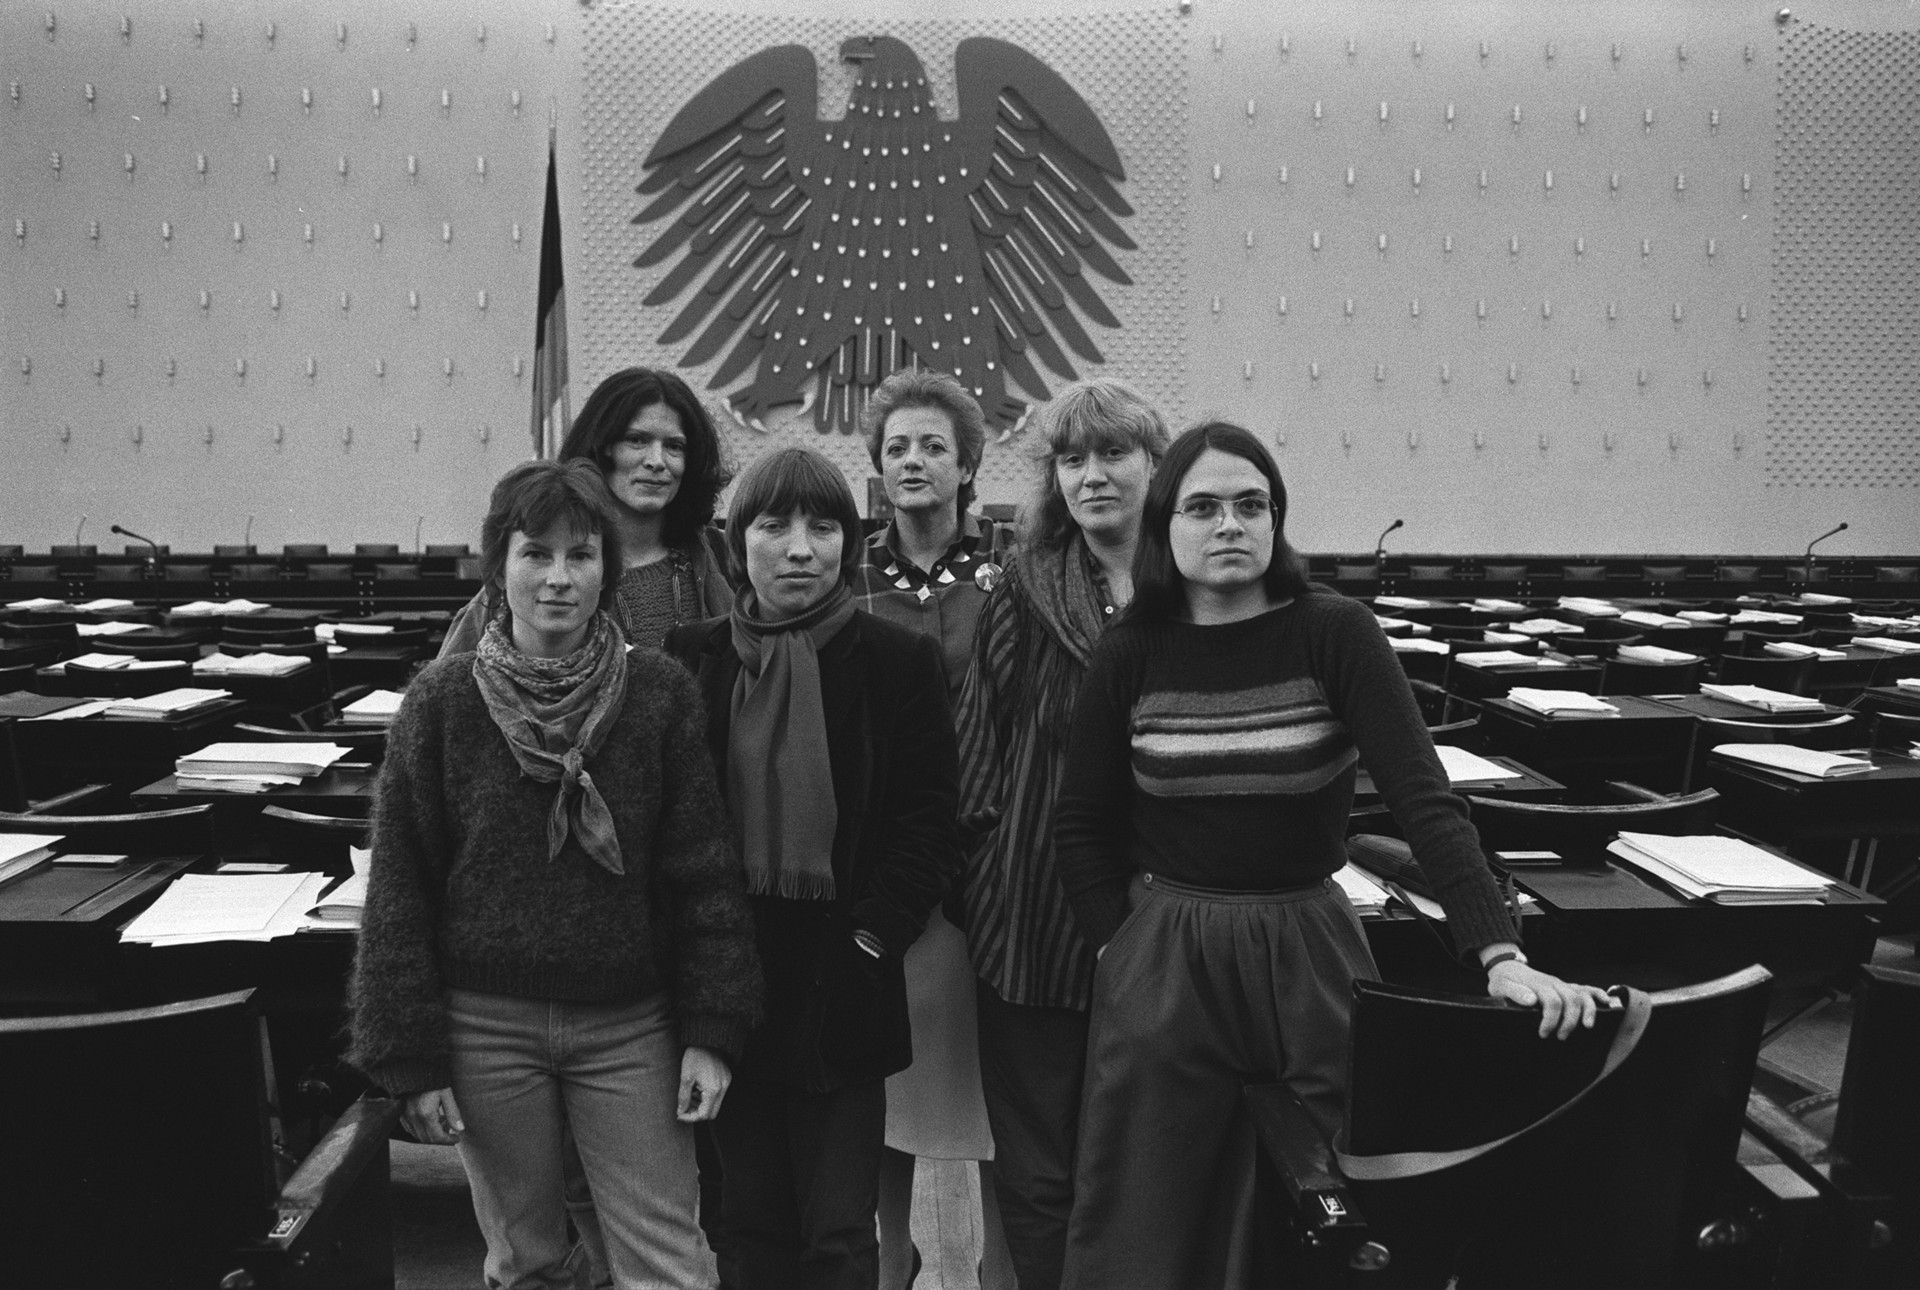 Die Fraktionssprecherinnen der Grünen im Bundestag 1984: Heidemarie Dann, Annemarie Borgmann, Antje Vollmer, Erika Hickel, Waltraud Schoppe und Christa Nickels (v. l. n. r.); Copyright: ZDF/picture alliance/Sven Simon